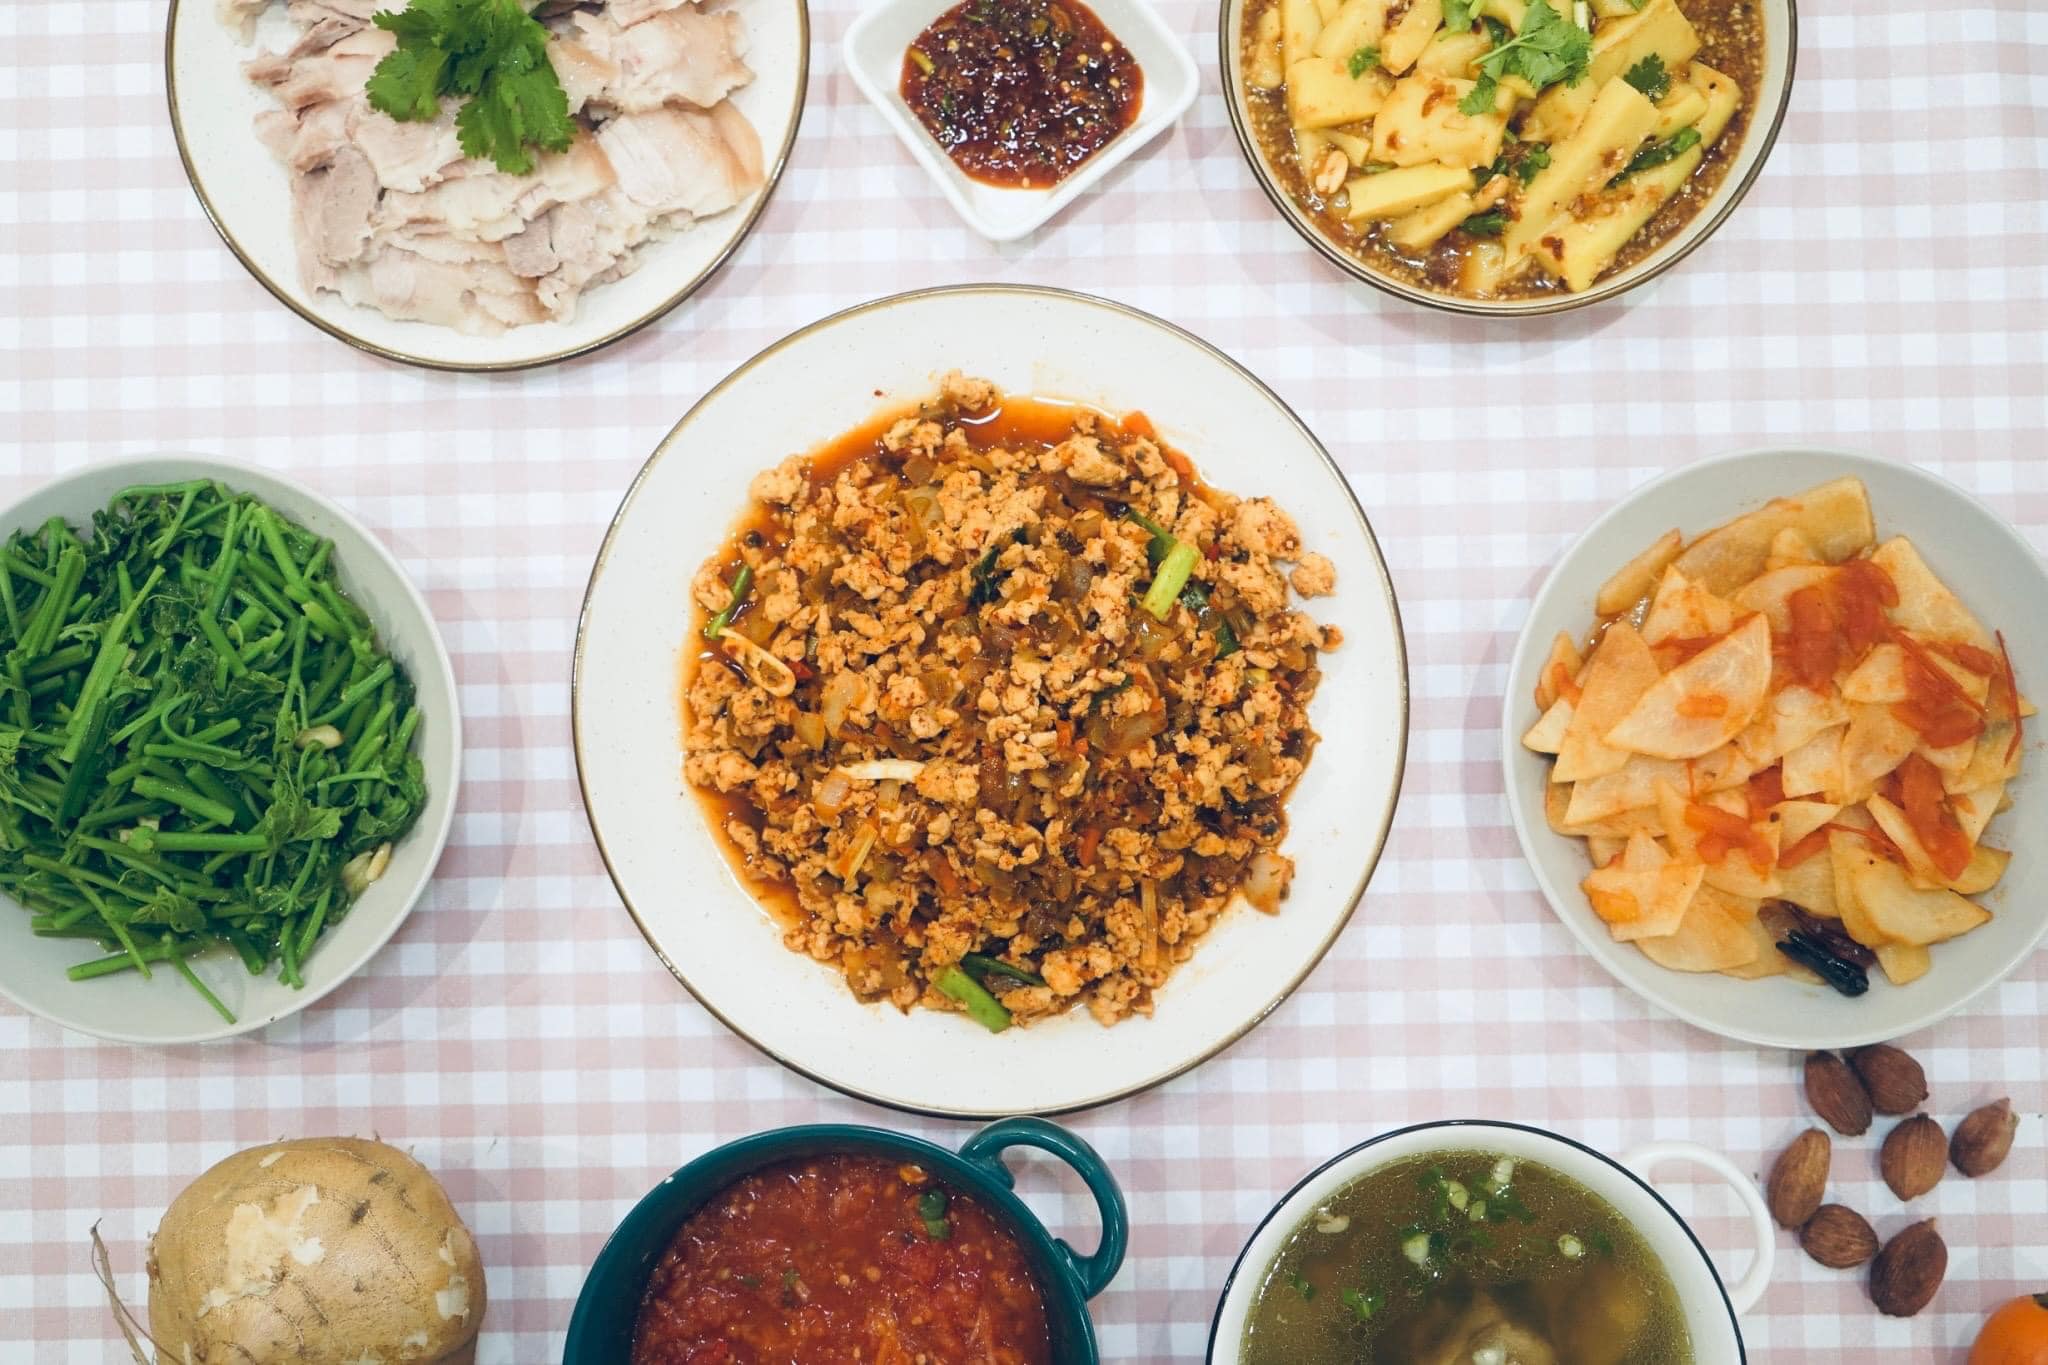 緬甸街家宴準備的都是道地緬甸風味家鄉料理 圖／Mingalar par 鳴個喇叭 緬甸街臉書